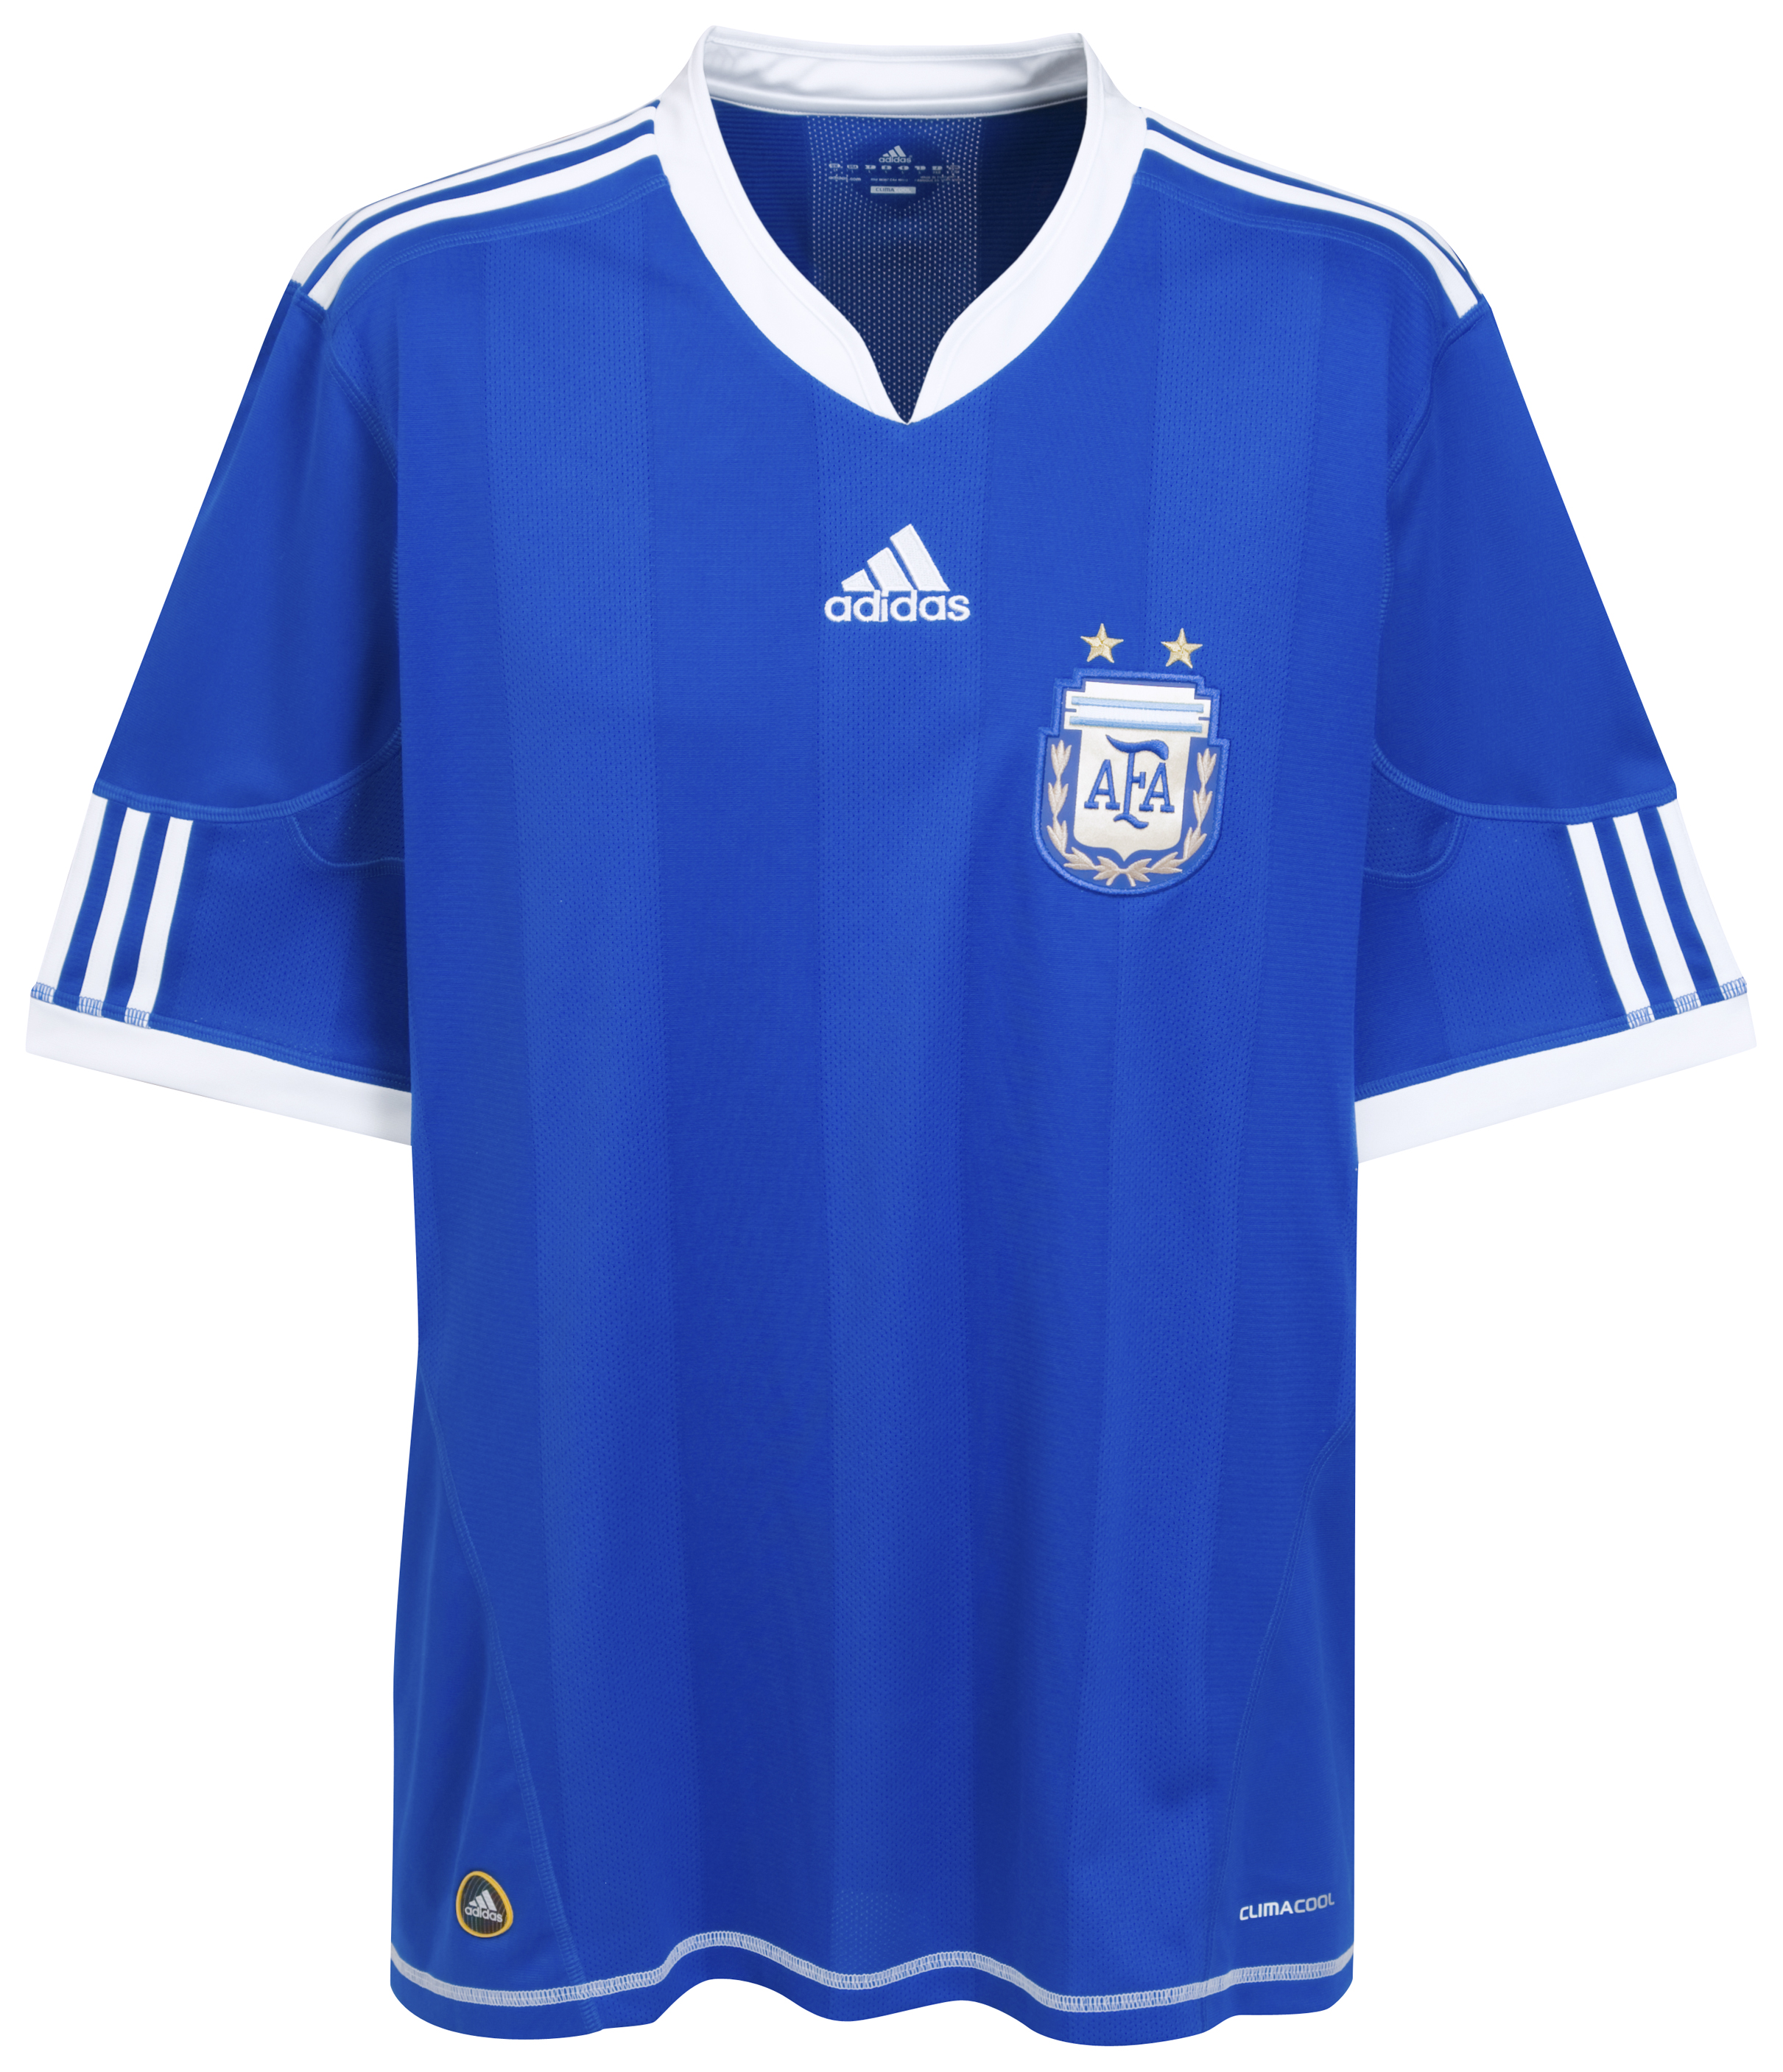 ملابس المنتخبات لكأس العالم ‎(2010)‎ Kb-66925